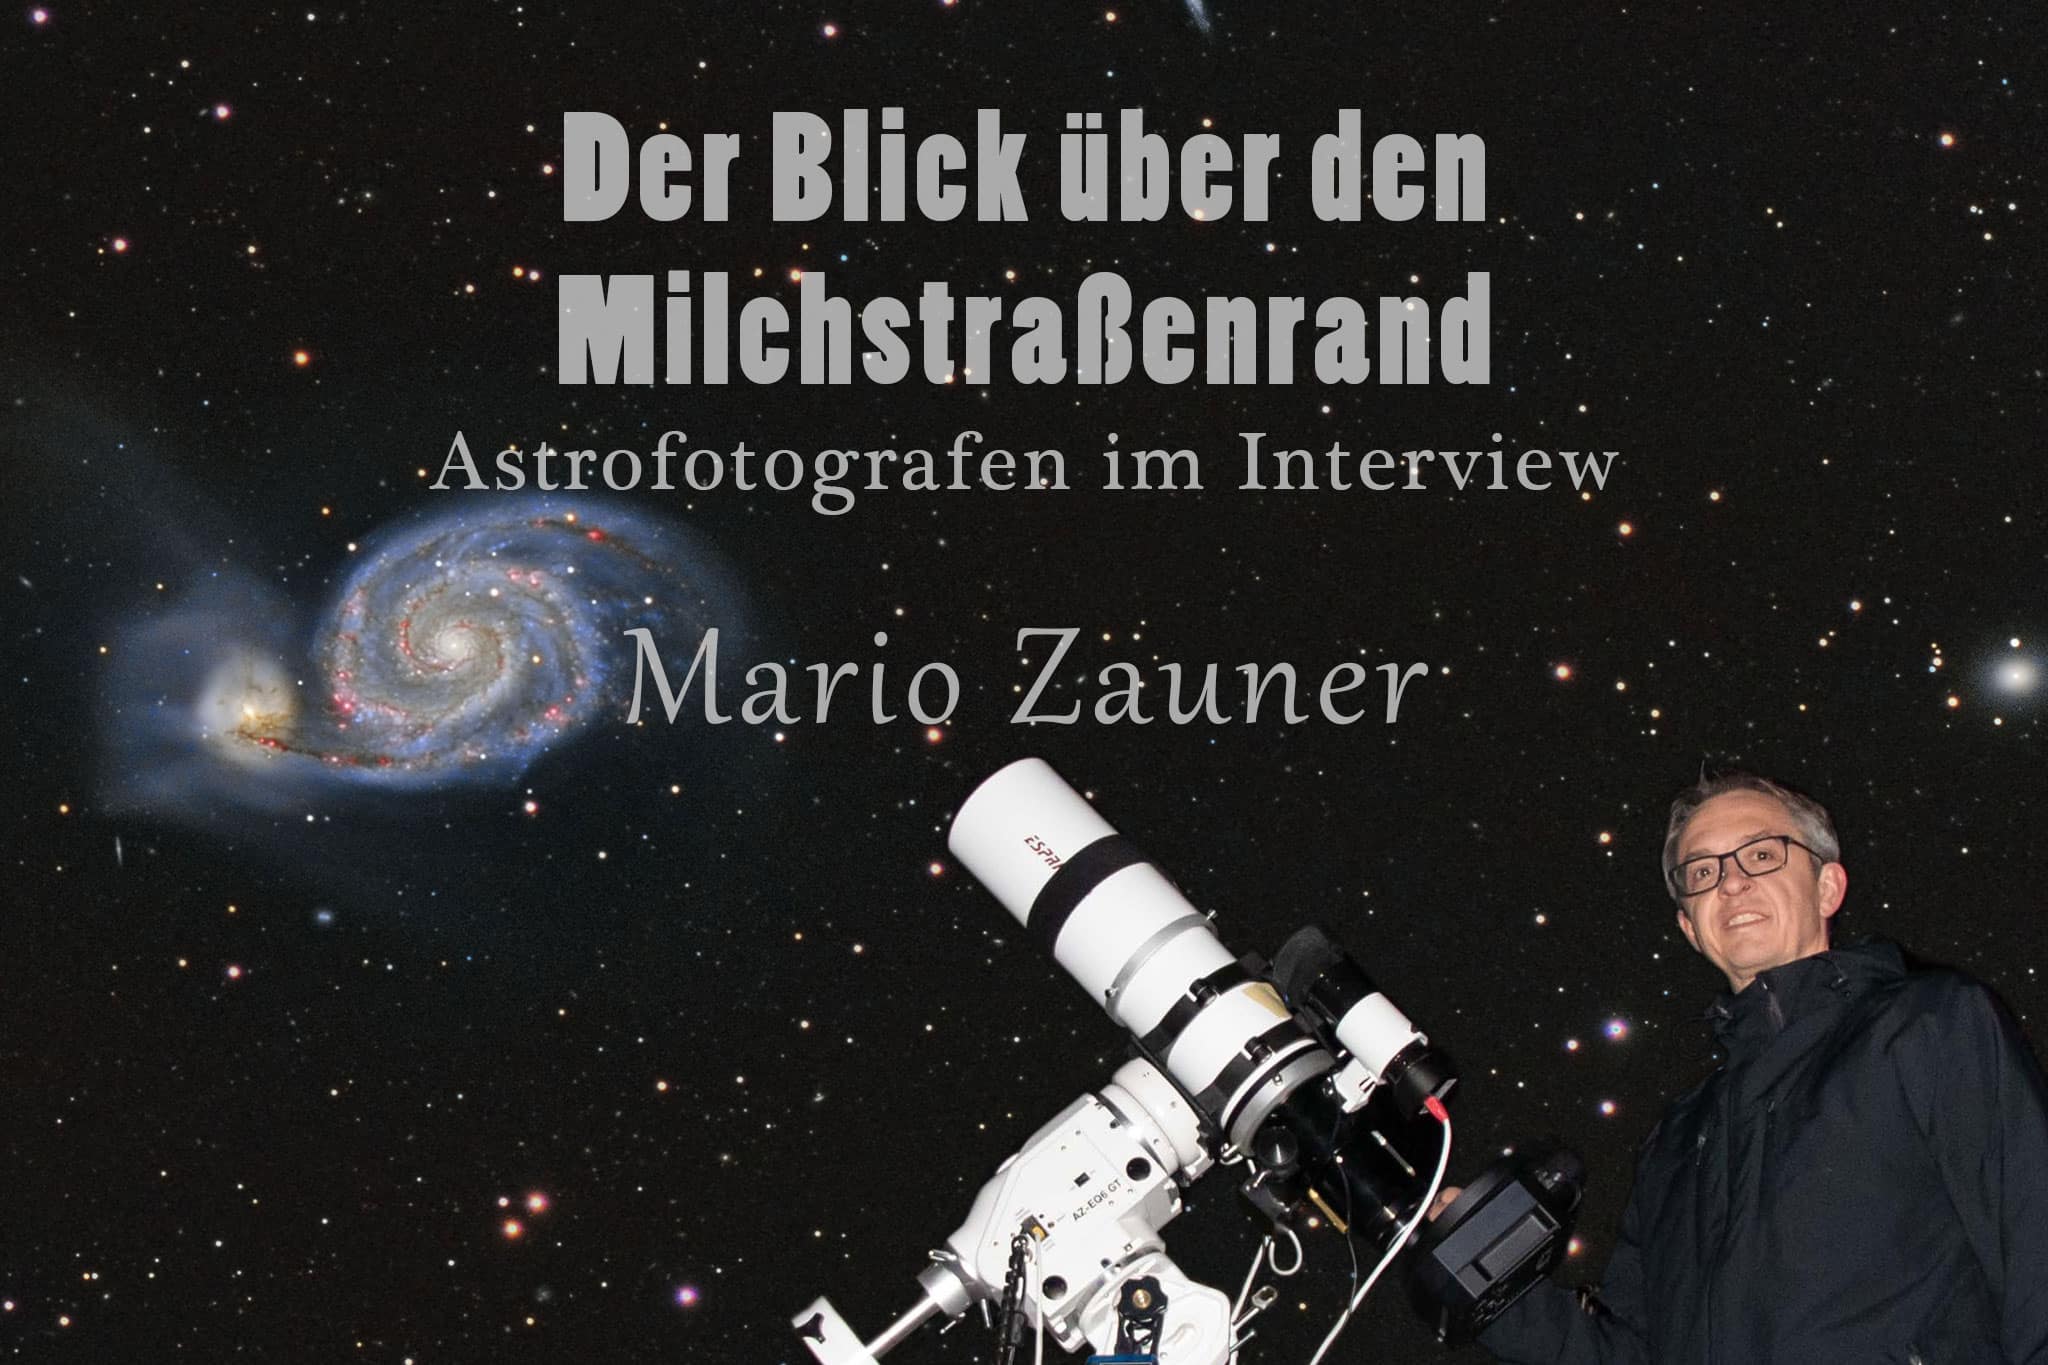 Der Blick über den Milchstraßenrand - Astrofotografen im Interview